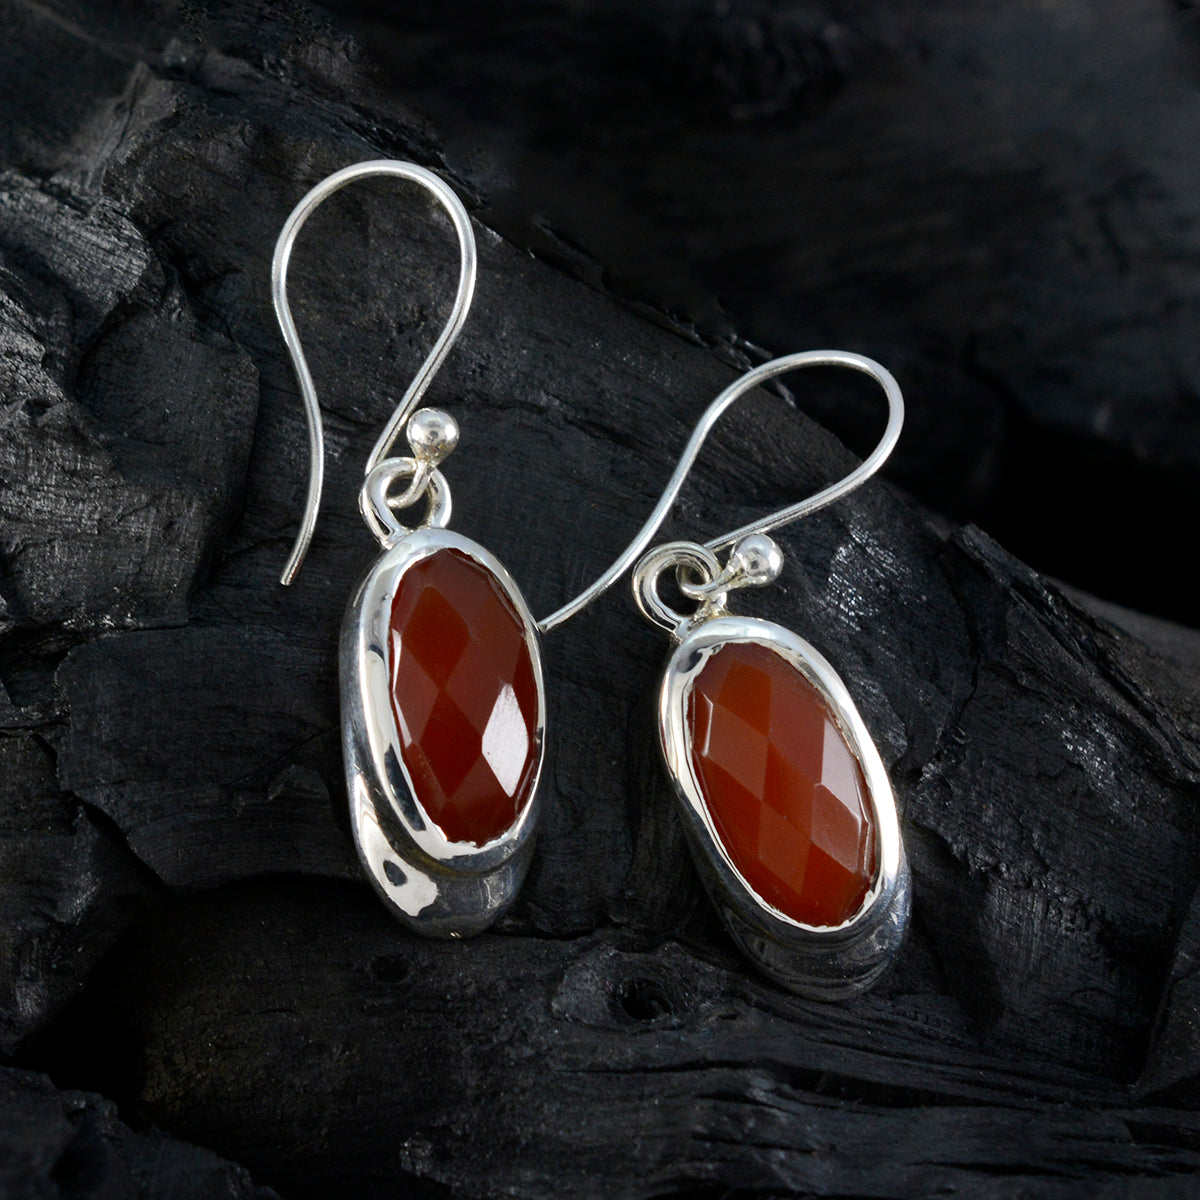 riyo drop-dead splendido orecchino in argento sterling per le donne orecchino in onice rosso con castone orecchino rosso orecchino pendente